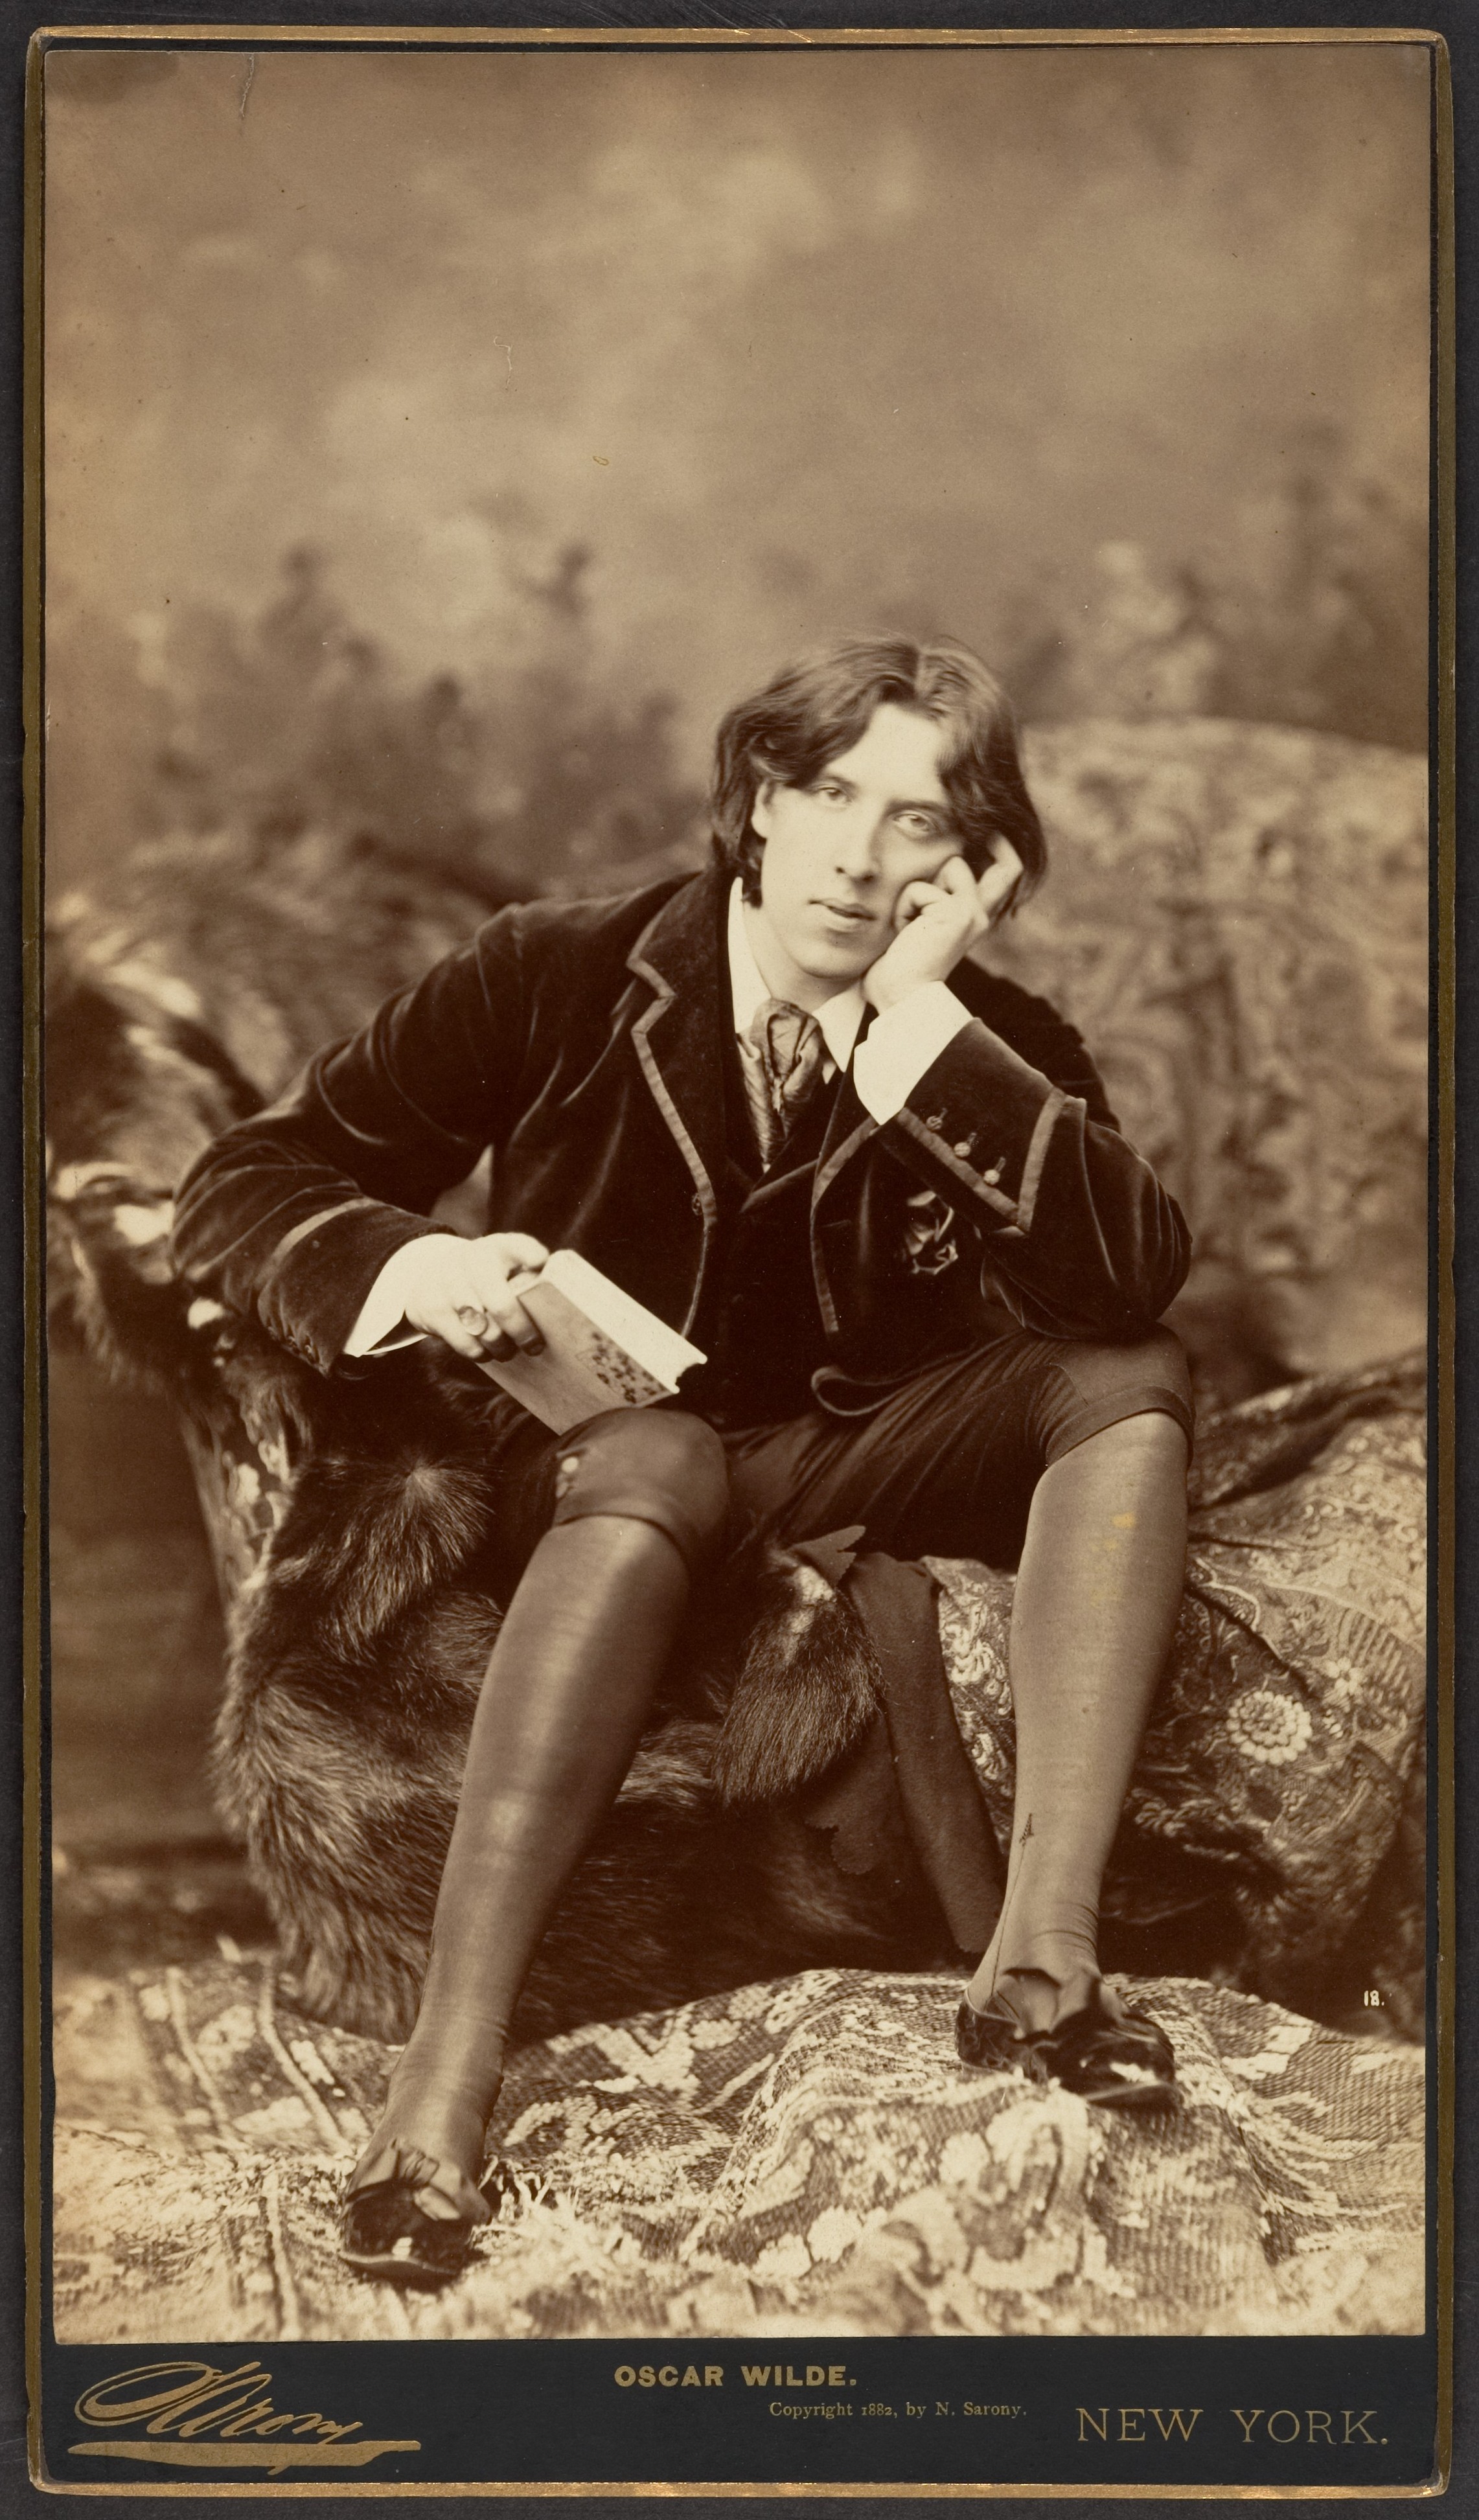 Napoleon Sarony, Oscar Wilde